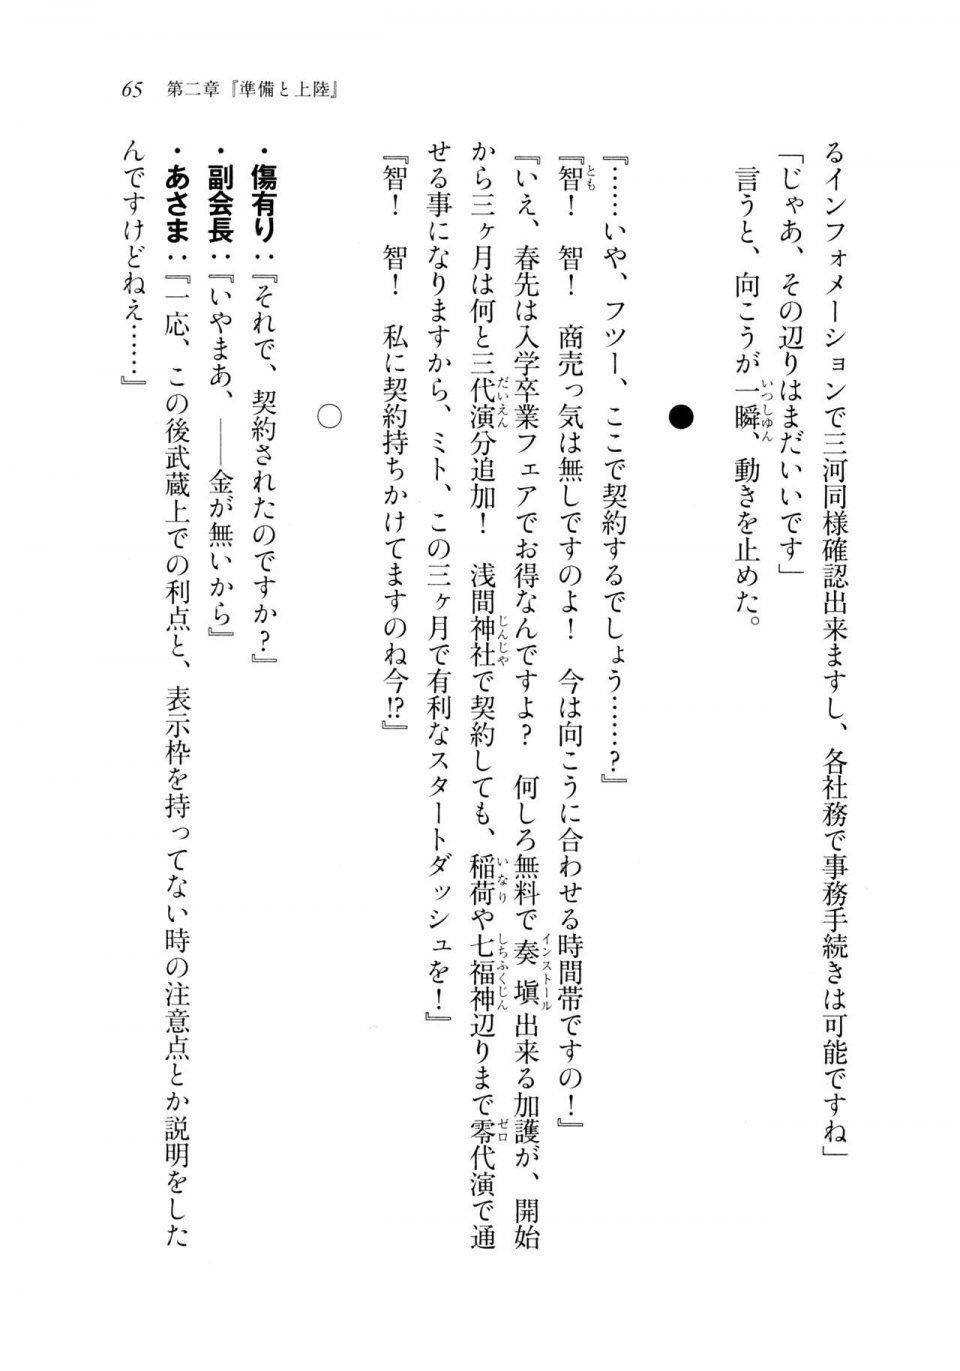 Kyoukai Senjou no Horizon LN Sidestory Vol 2 - Photo #63